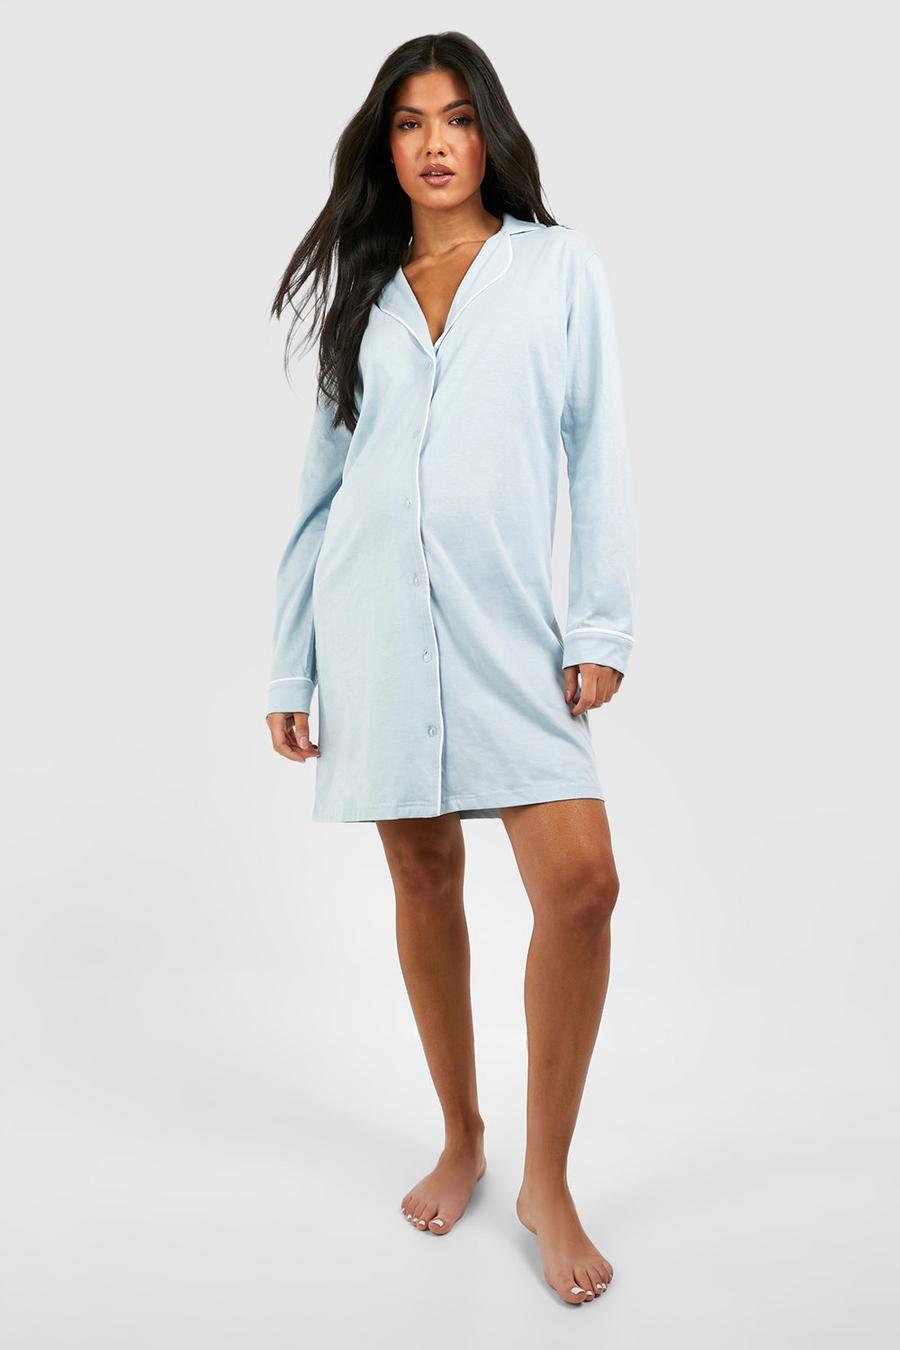 Nursing Pajamas -  Canada